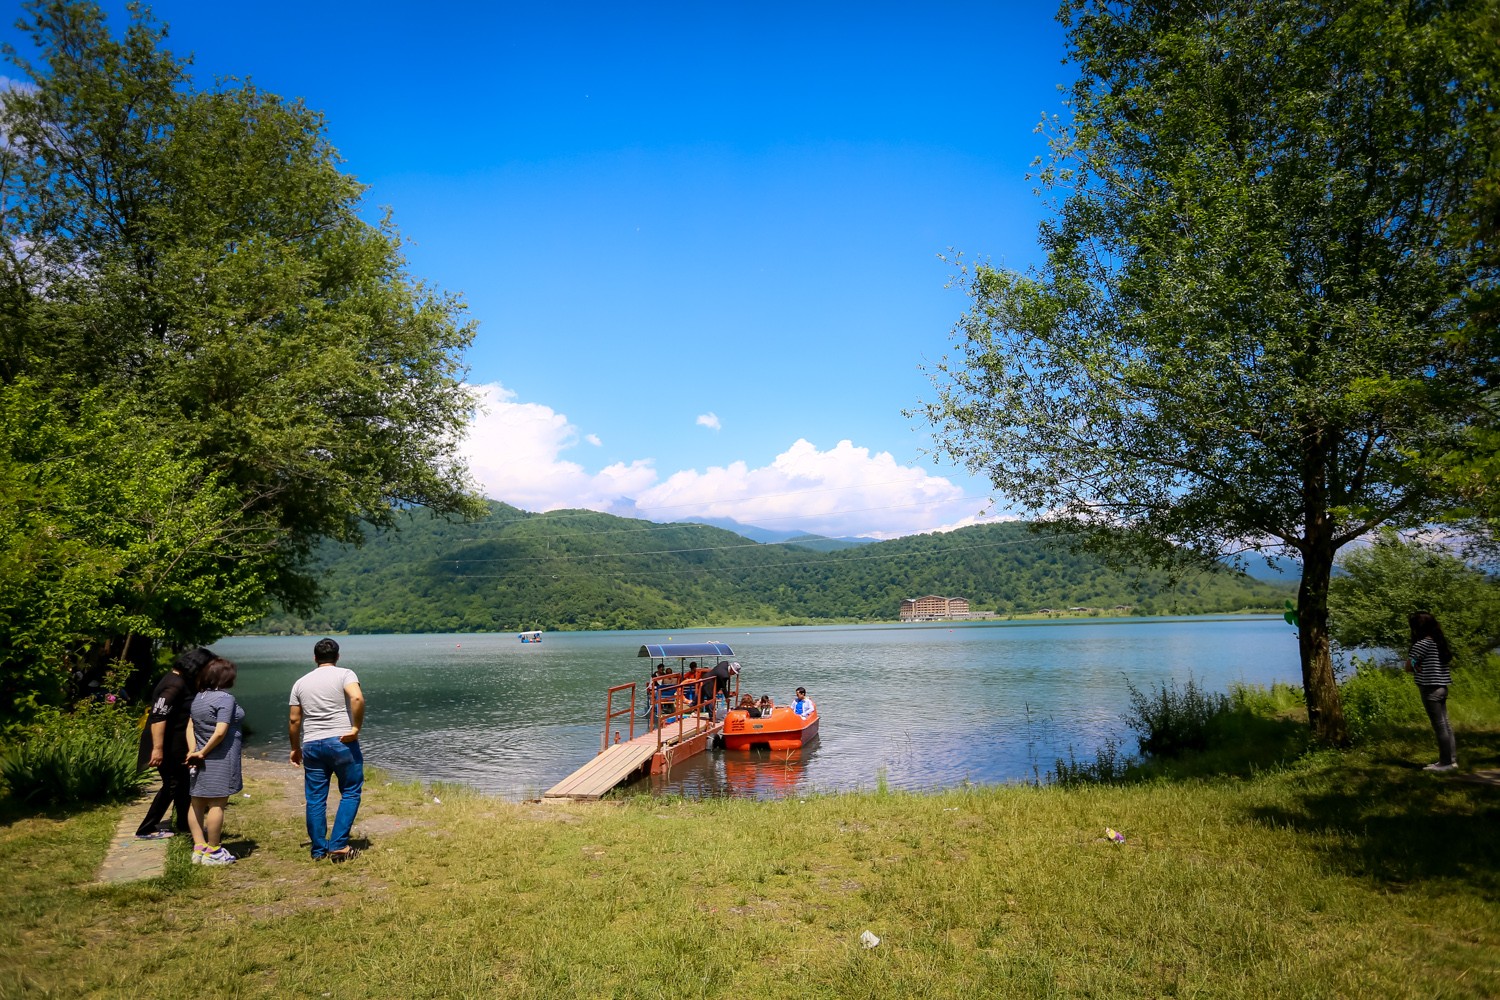 Озеро Нохур расположено на территории села Нохур Гышлаг Габалинского района, по правую сторону автомагистрали Баку-Габала